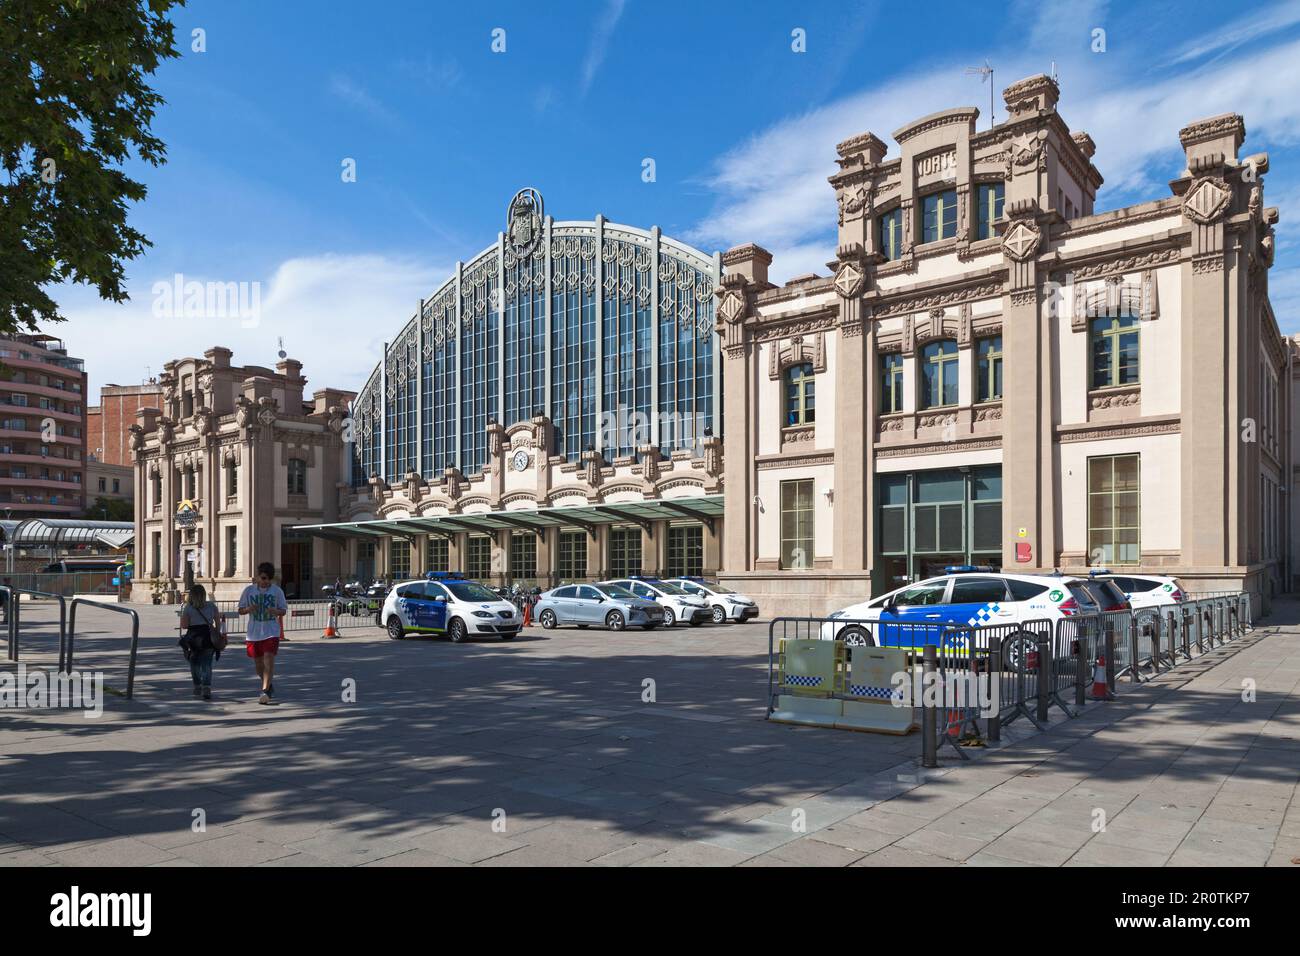 Barcelona, Spanien - Juni 08 2018: Der Estació del Nord oder Estación del Norte ist ein ehemaliger Bahnhof, der ursprünglich 1862 eröffnet wurde und als geschlossen wurde Stockfoto